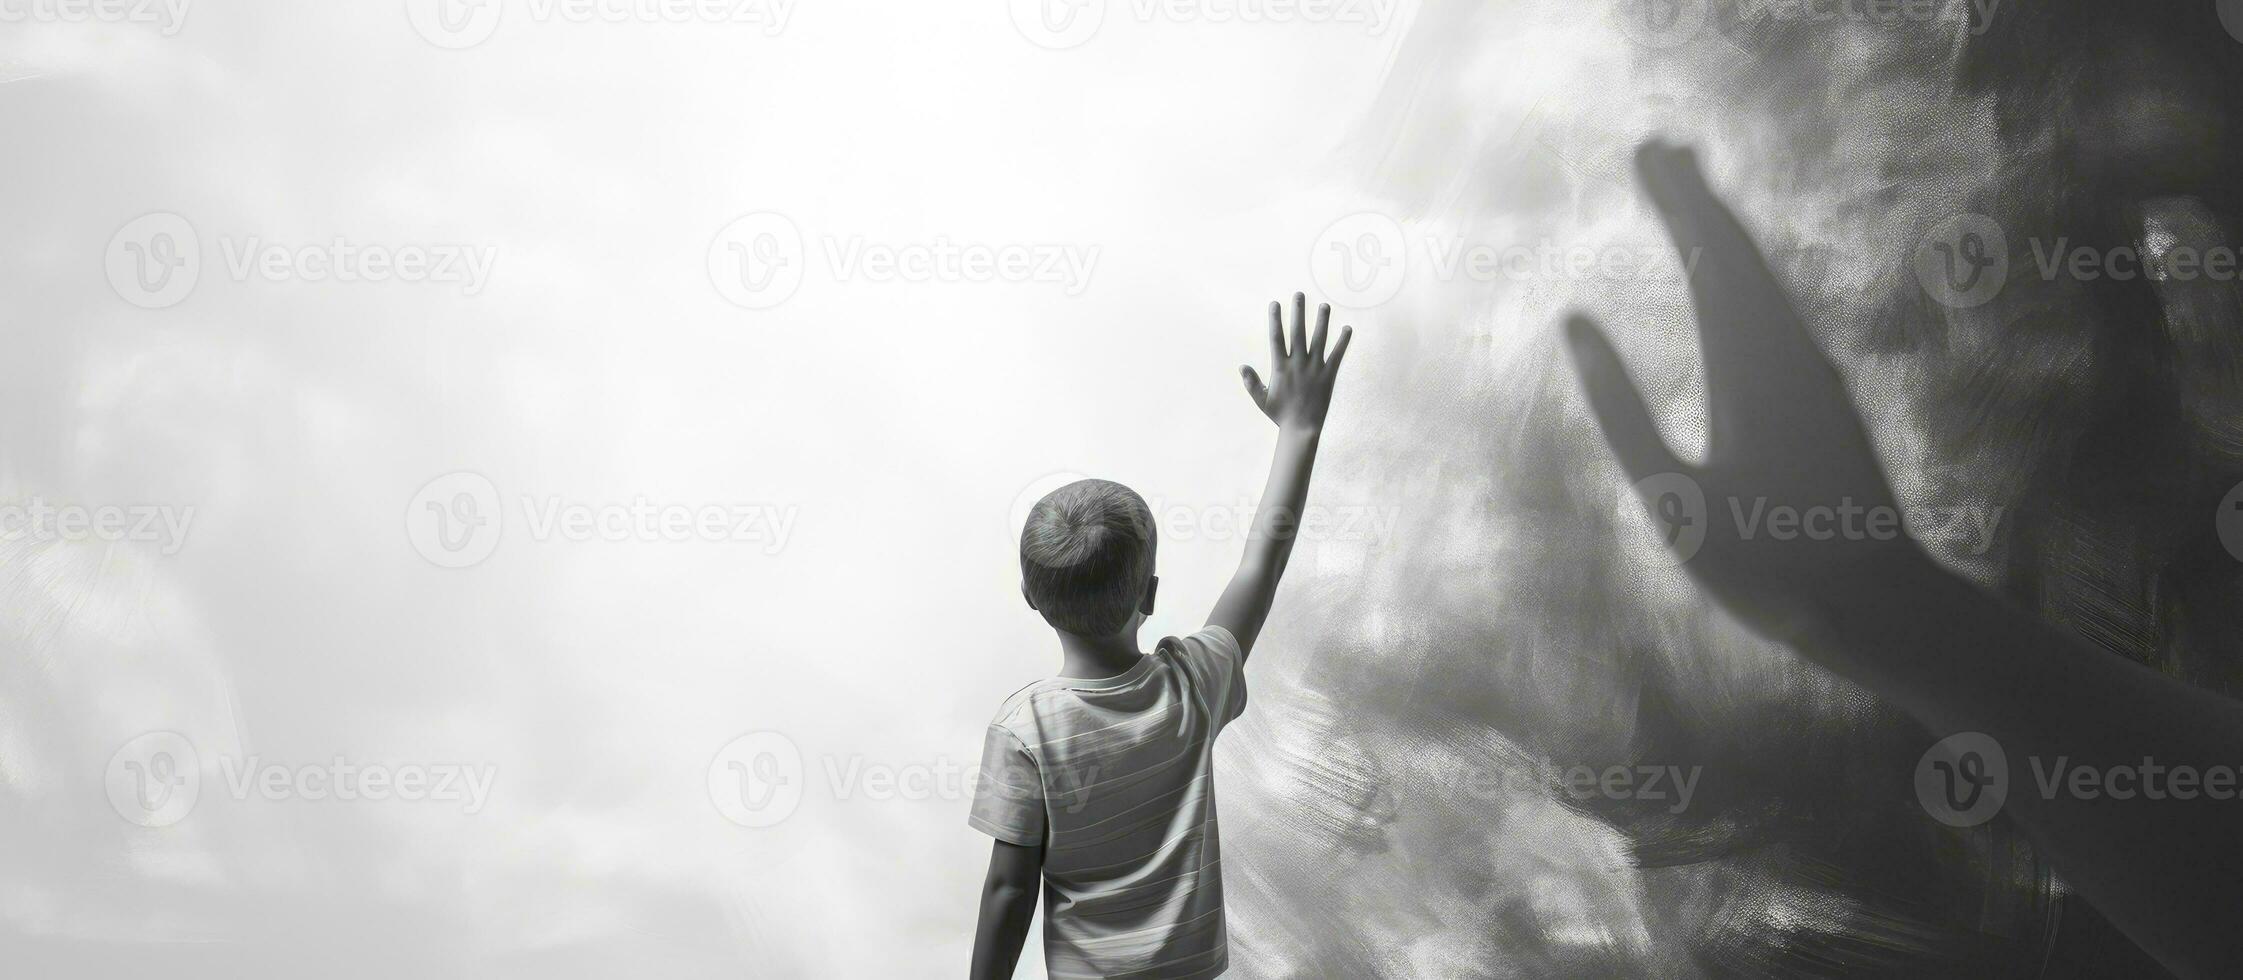 criança Alto cinco adulto dentro frente do Preto e branco parede foto